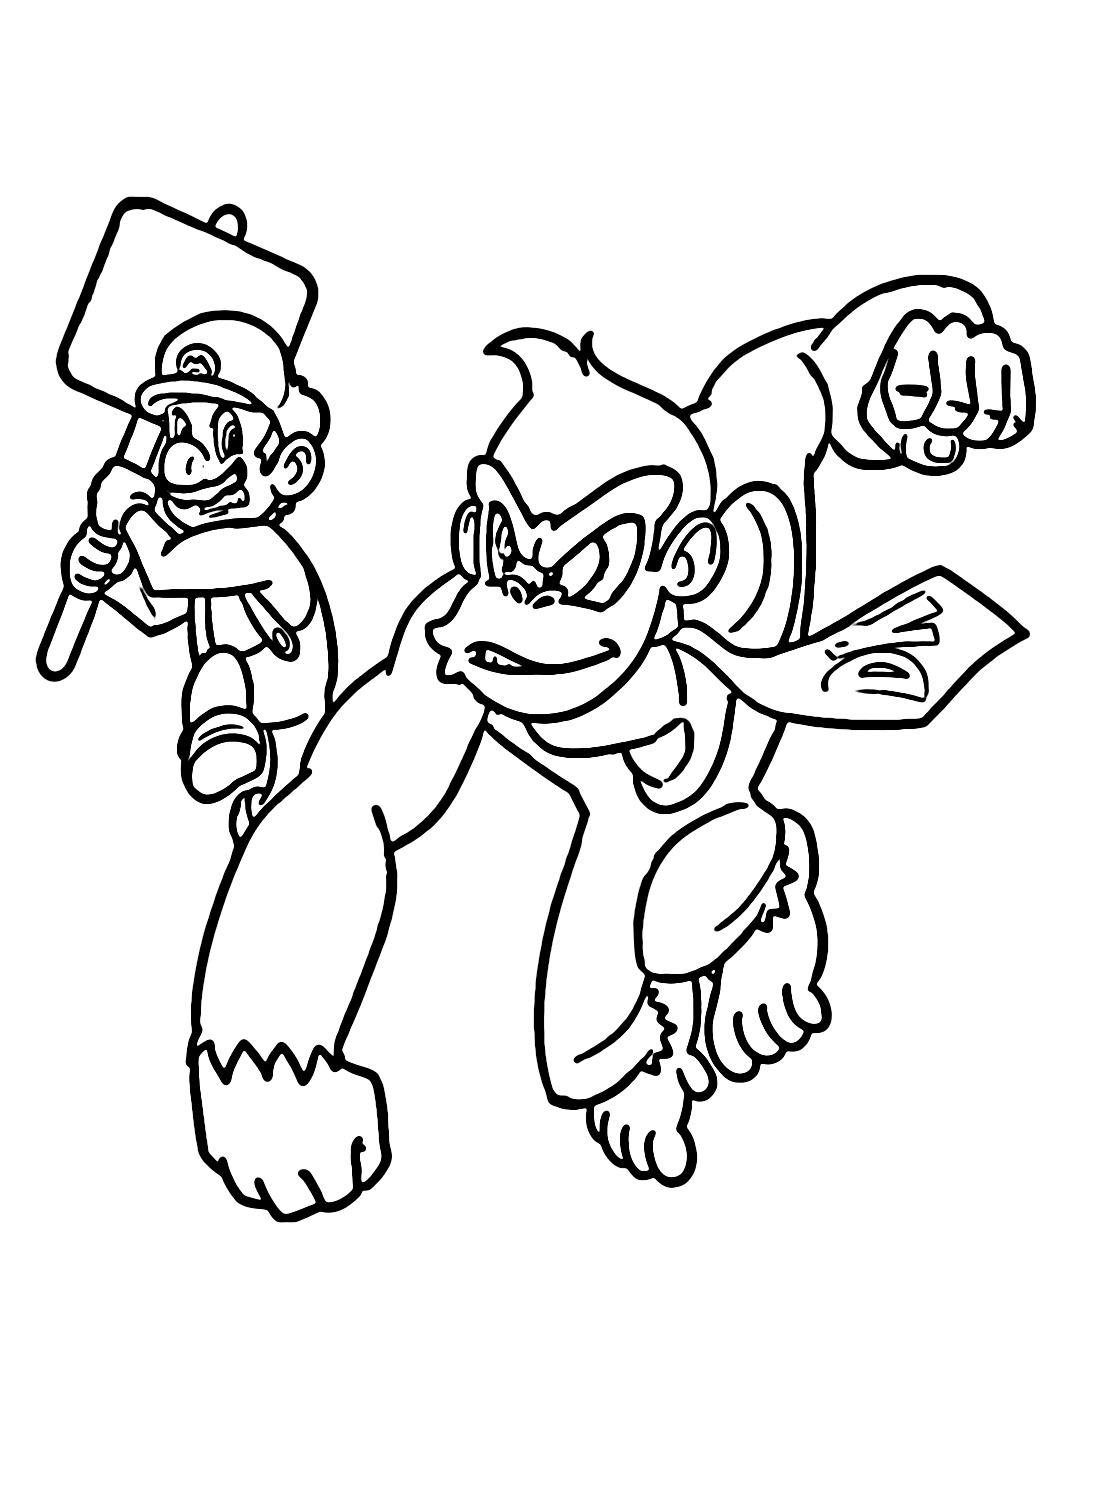 Desenho para colorir Mario e Sonic nos Jogos Olímpicos Tóquio 2020 : Boxe -  Donkey Kong - Bowser 8